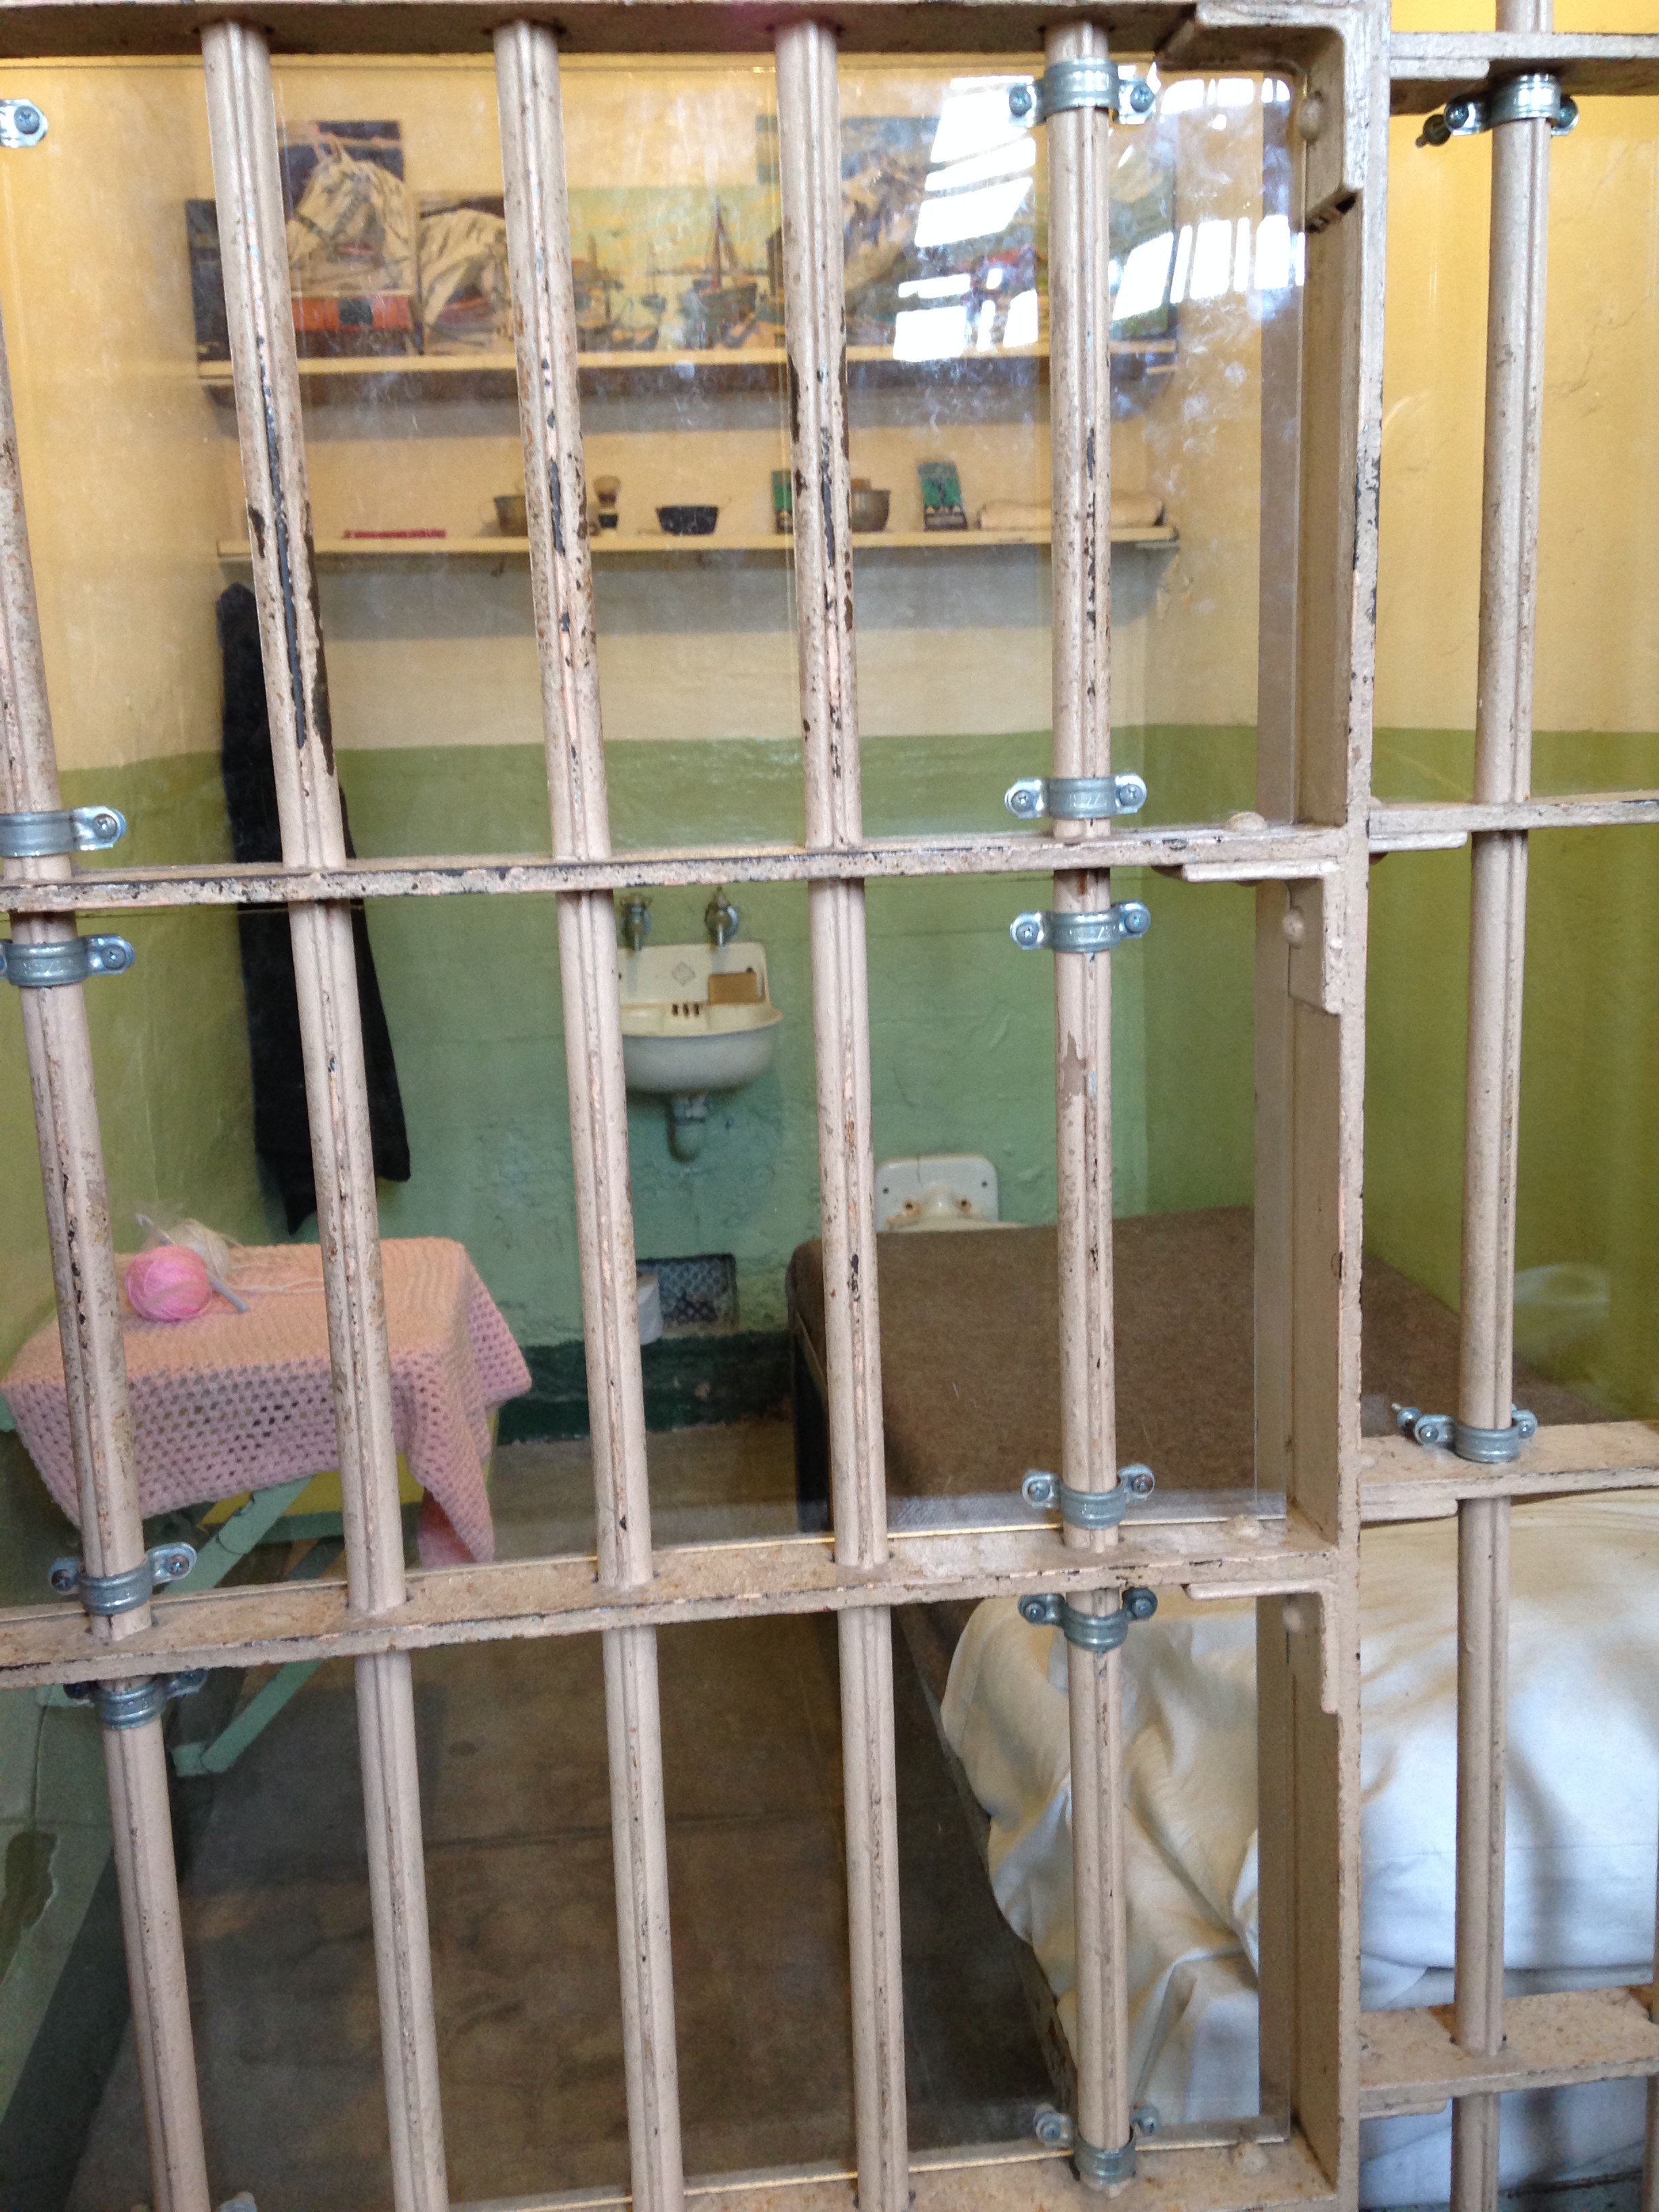 20140426 231532196 ios - Una visita a la Cárcel de Alcatraz